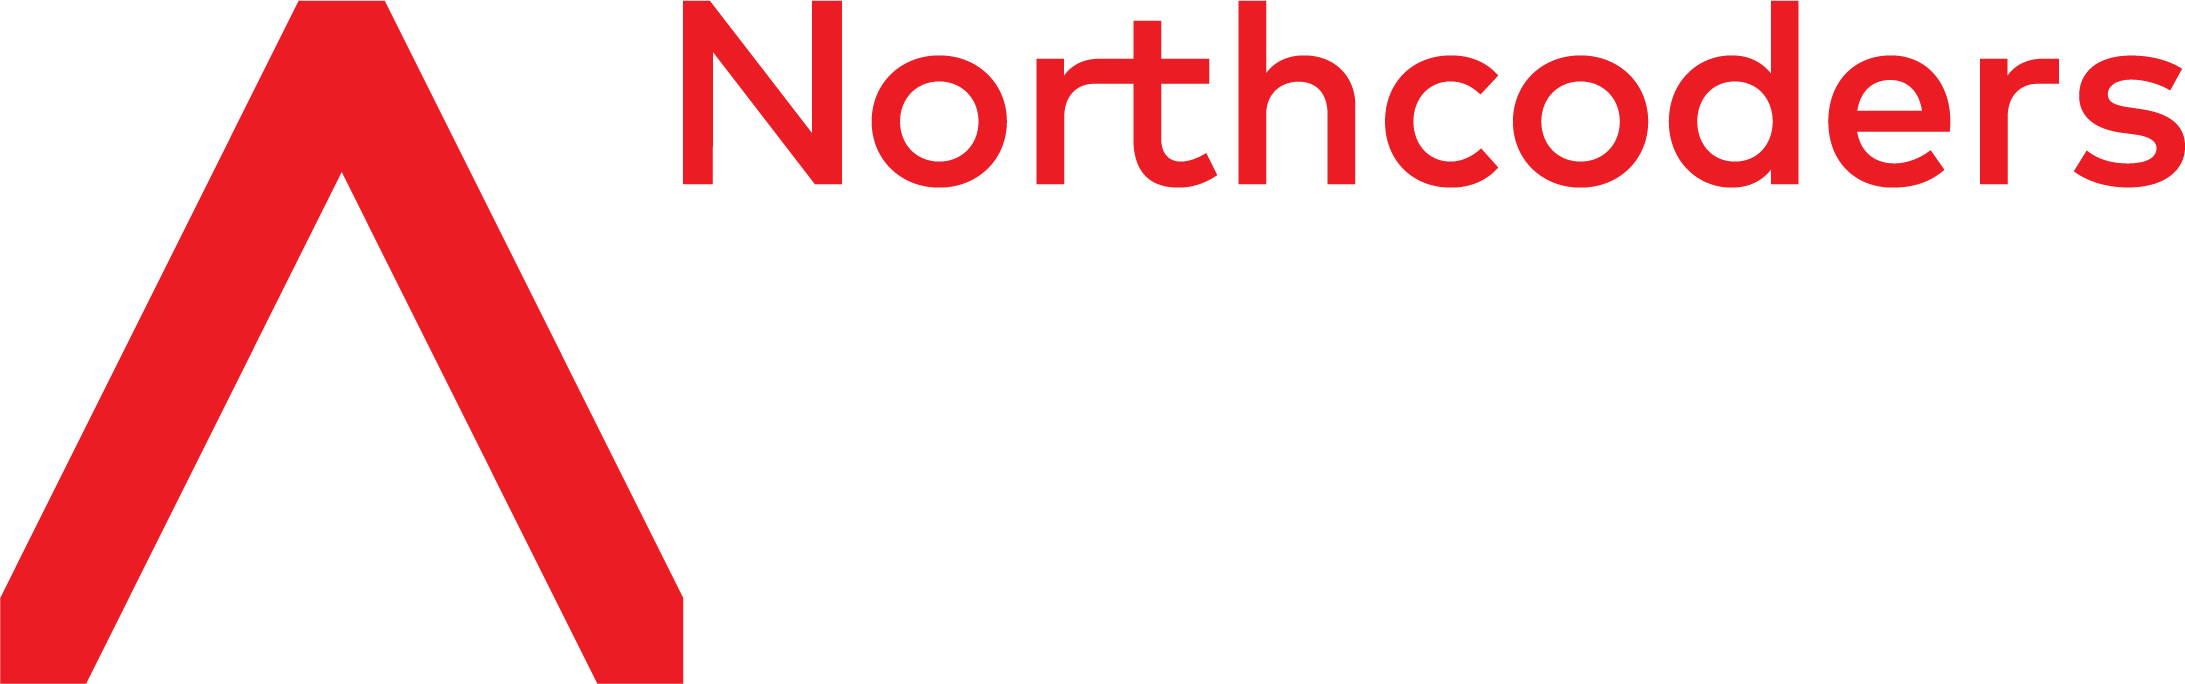 Northcoders Logo